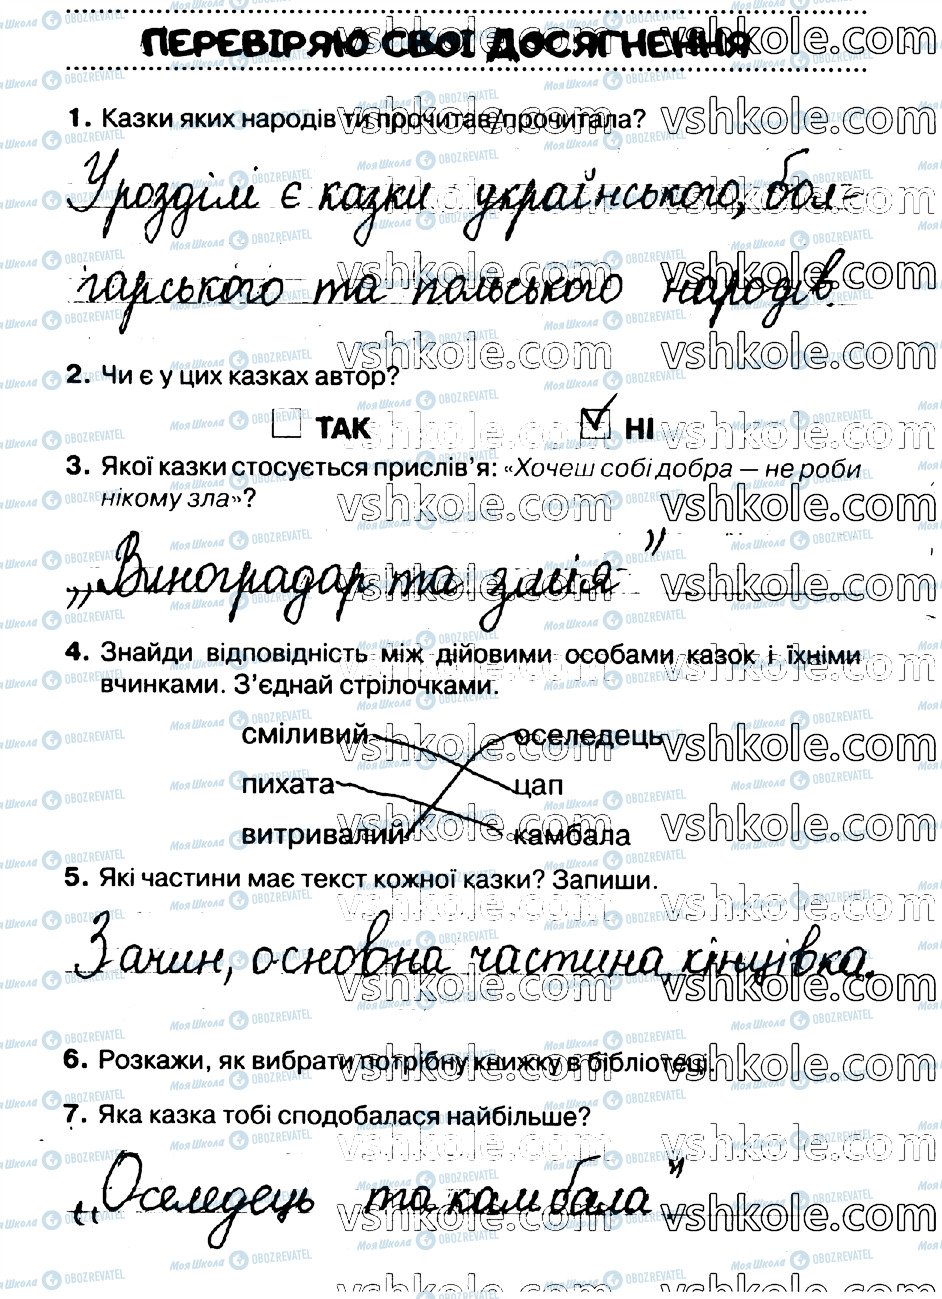 ГДЗ Укр мова 2 класс страница стр24